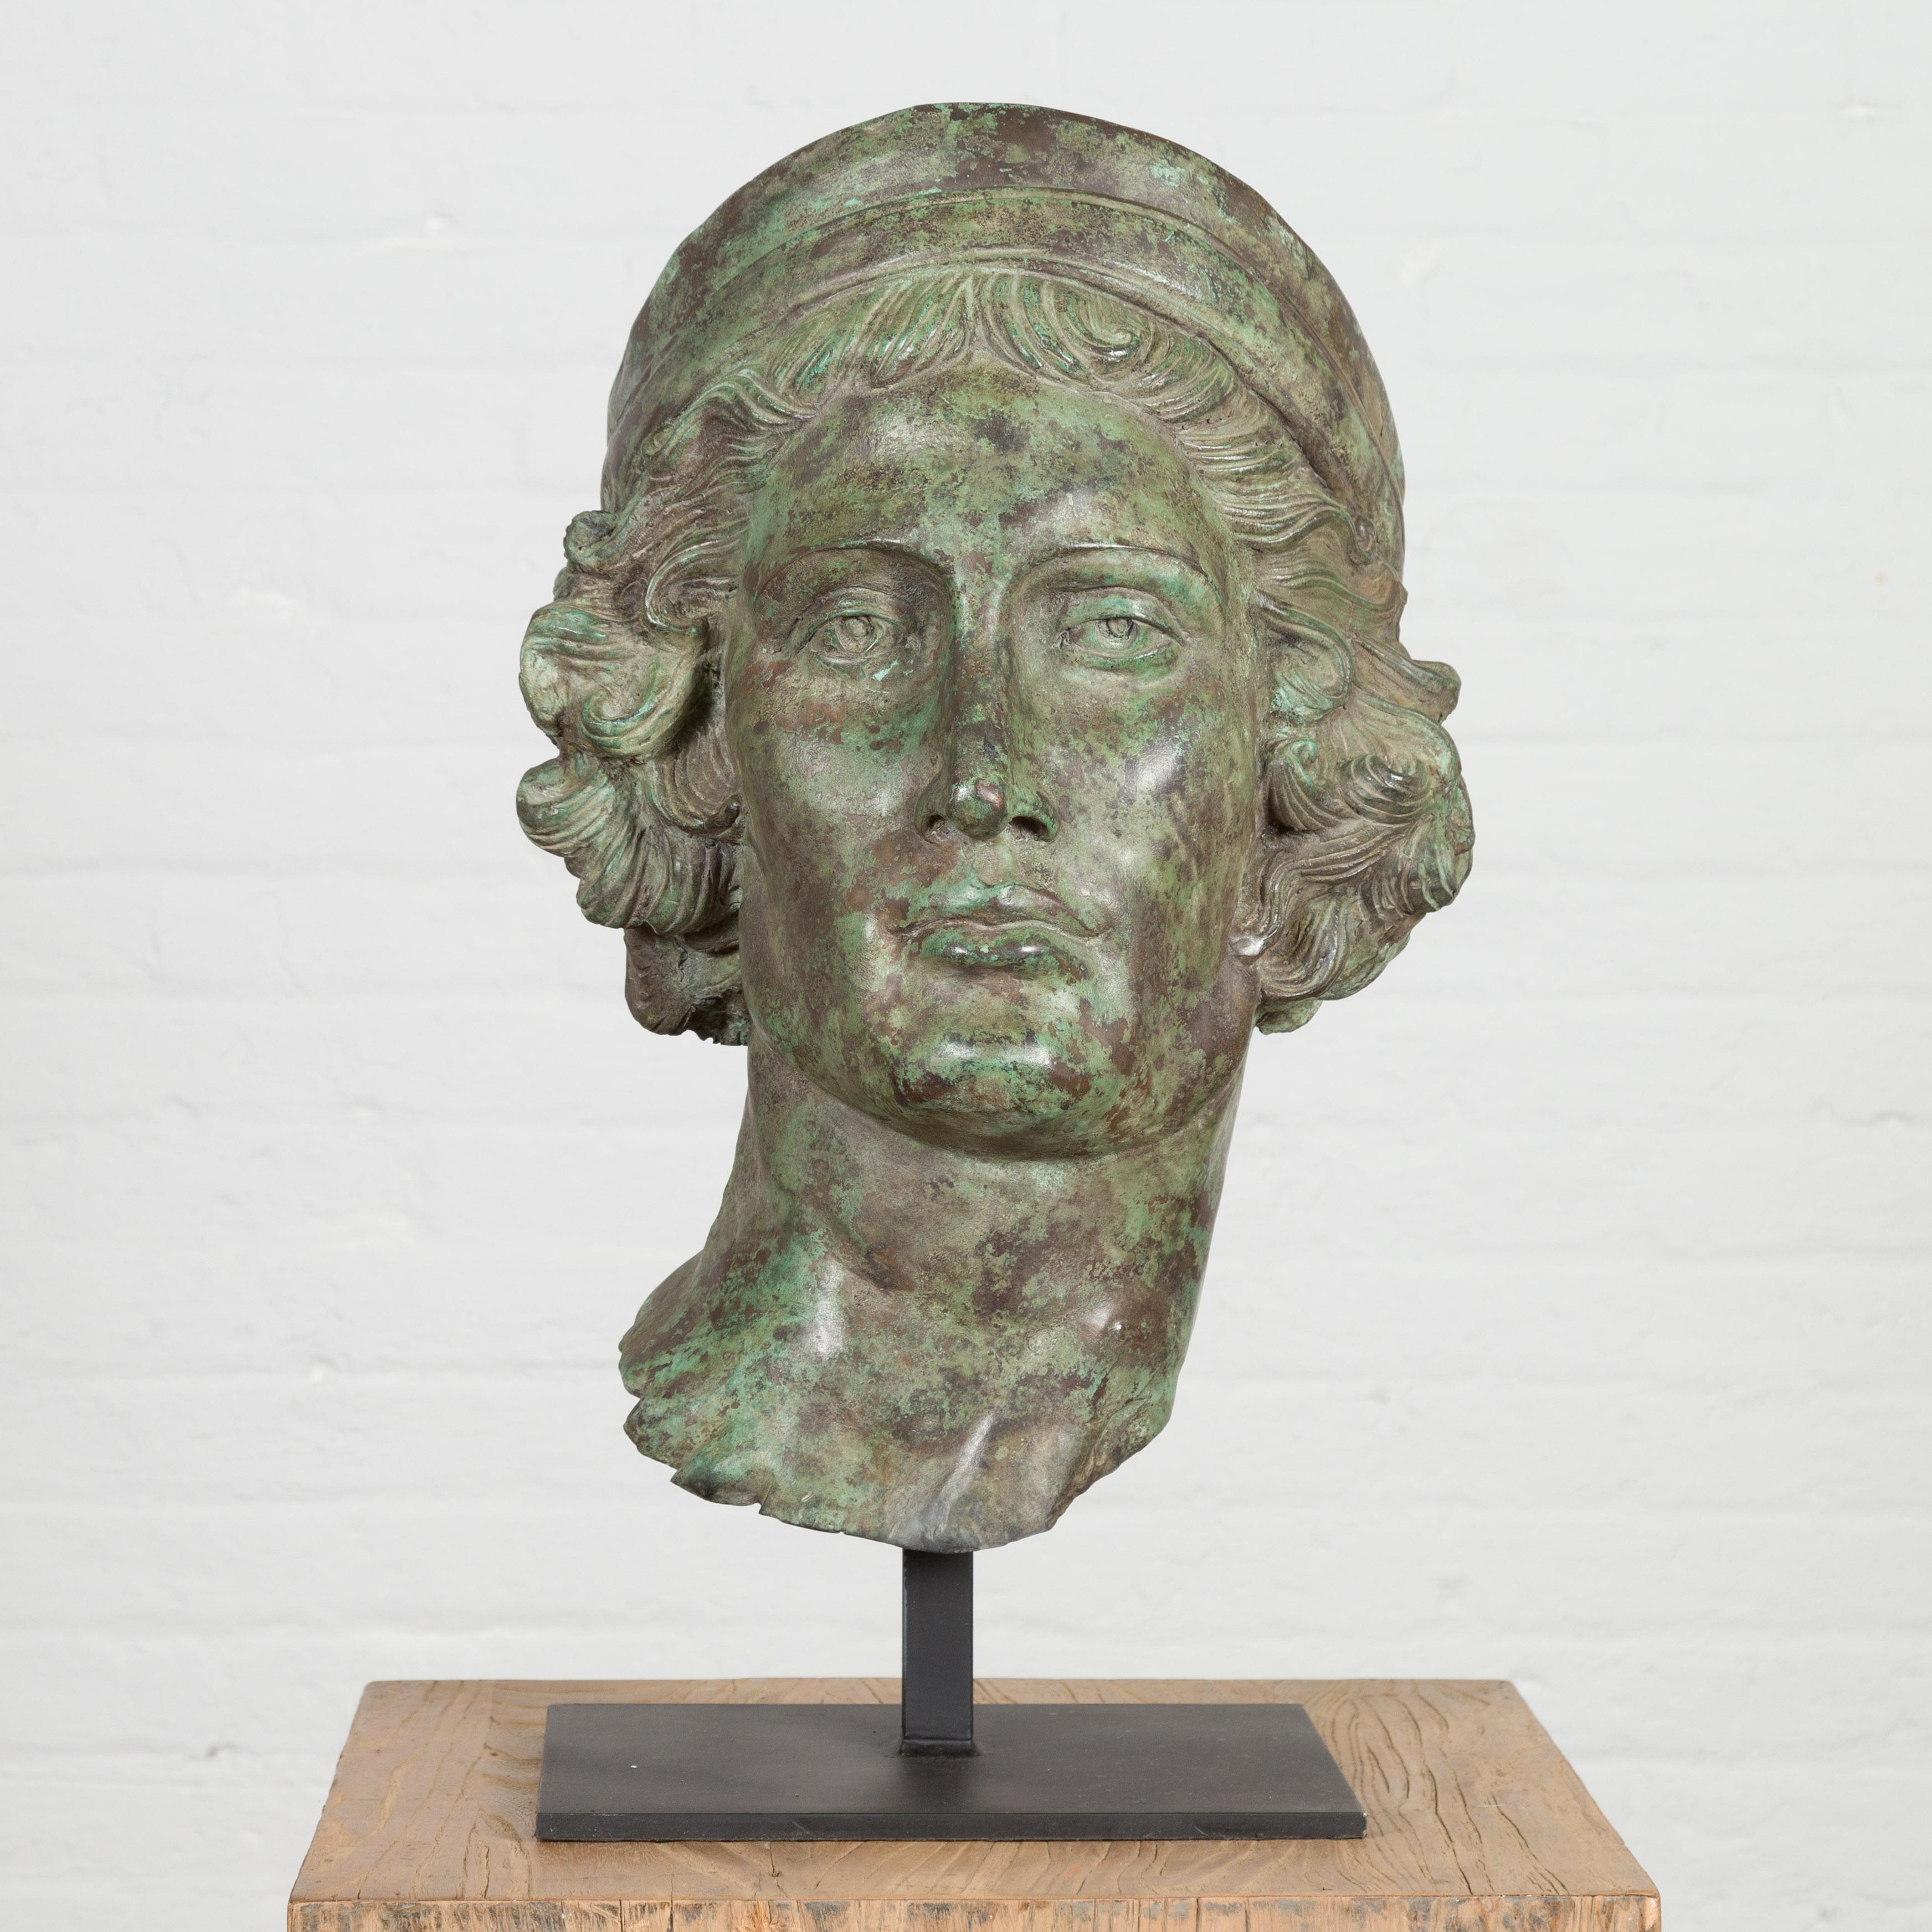 Sculpture de tête de style gréco-romain en bronze coulé à la cire perdue représentant un jeune avec un bandeau en patine vert-de-gris, monté sur une base personnalisée de couleur noire. Créée selon la technique traditionnelle de la cire perdue qui